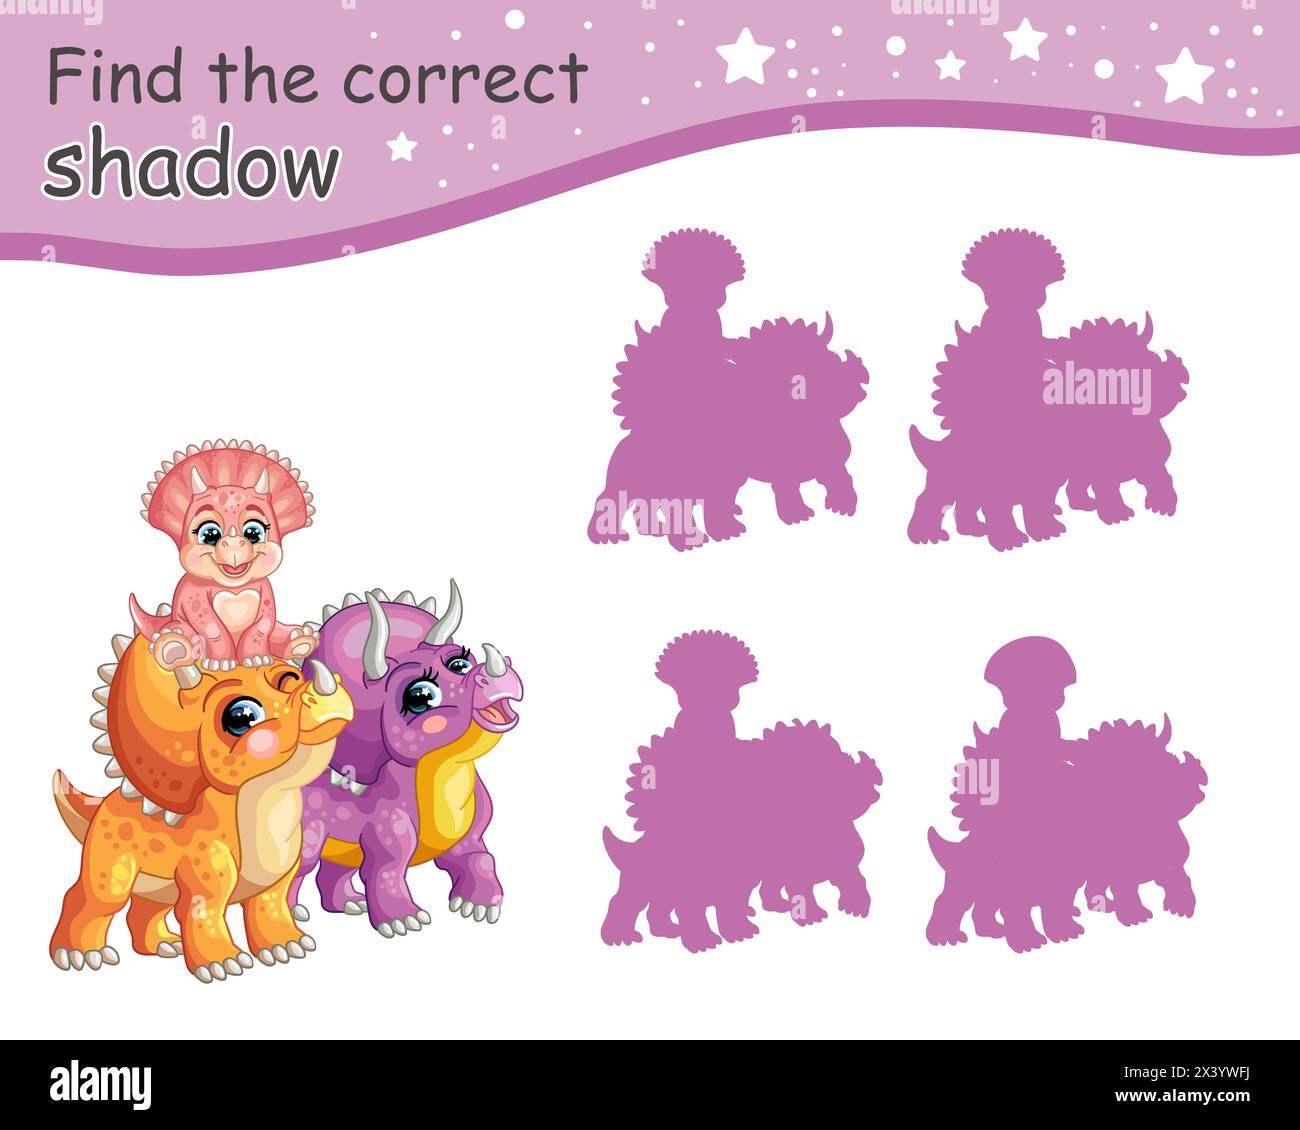 Suchen Sie den richtigen Schatten. Niedliche triceratops Dinosaurier Familie. Pädagogisches Matching-Spiel für Kinder mit Zeichentrickfigur. Aktivität, Logikspiel, l Stock Vektor